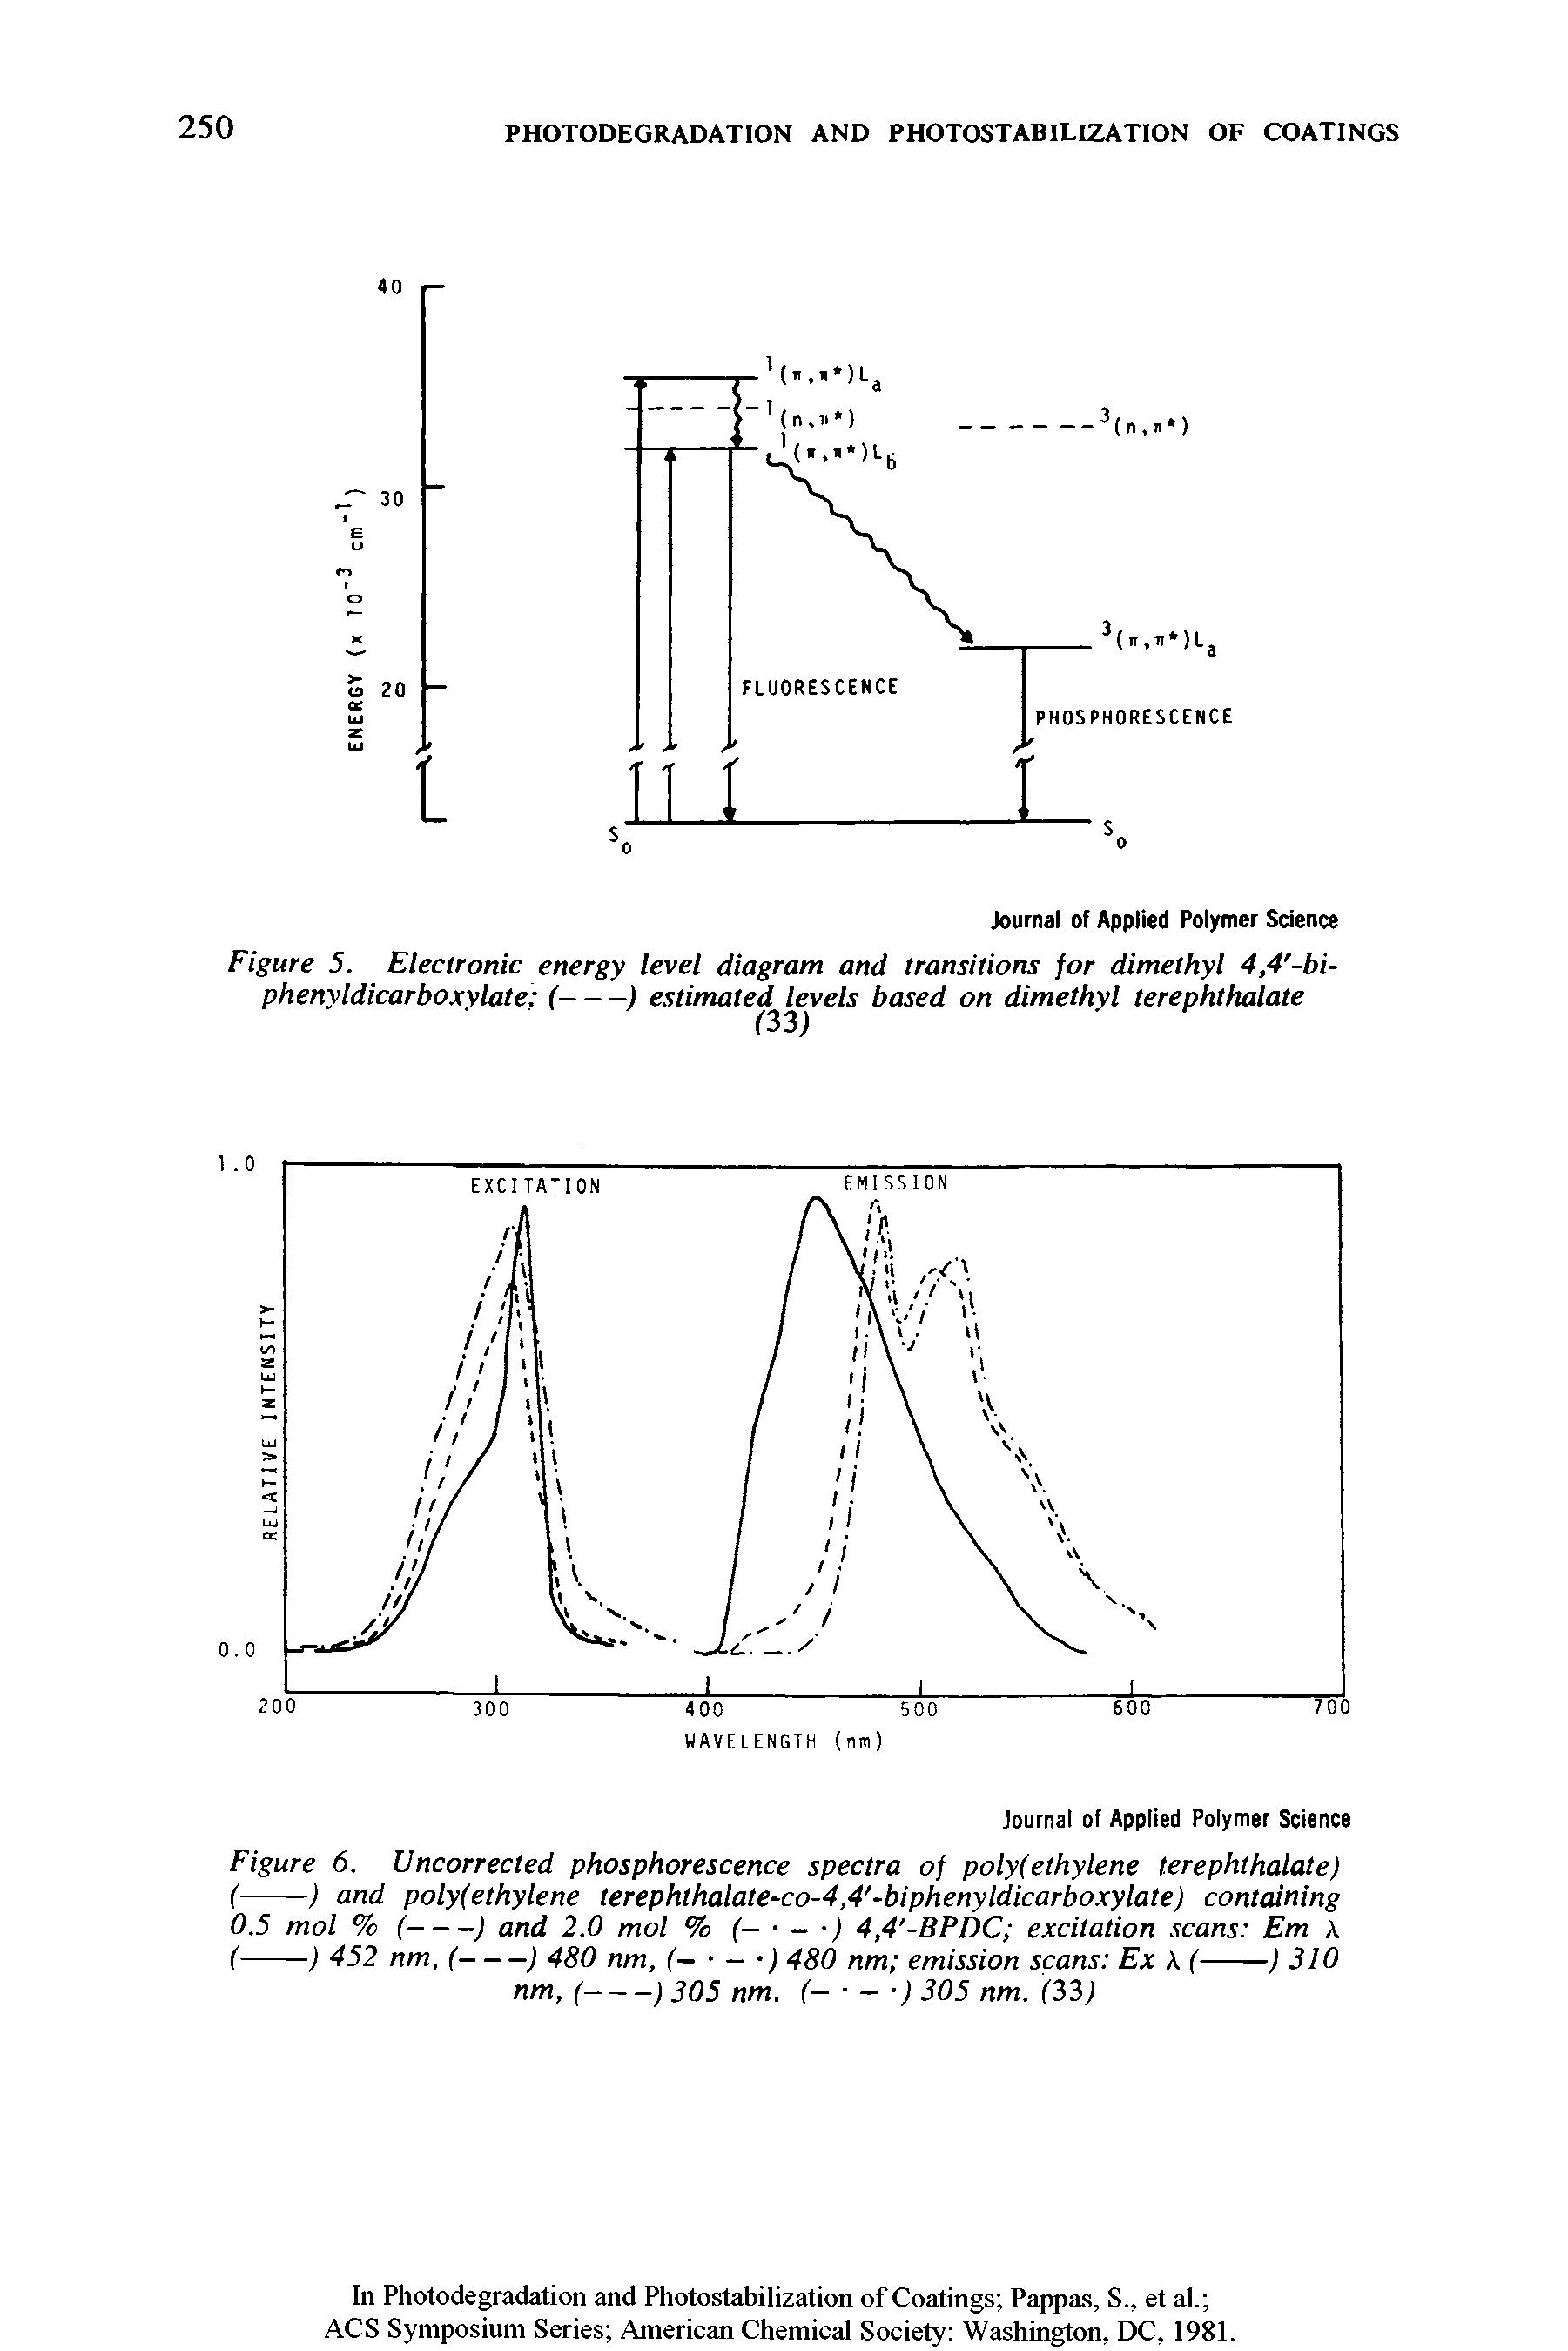 Figure 6. Uncorrected phosphorescence spectra of poly(ethylene terephthalate)...